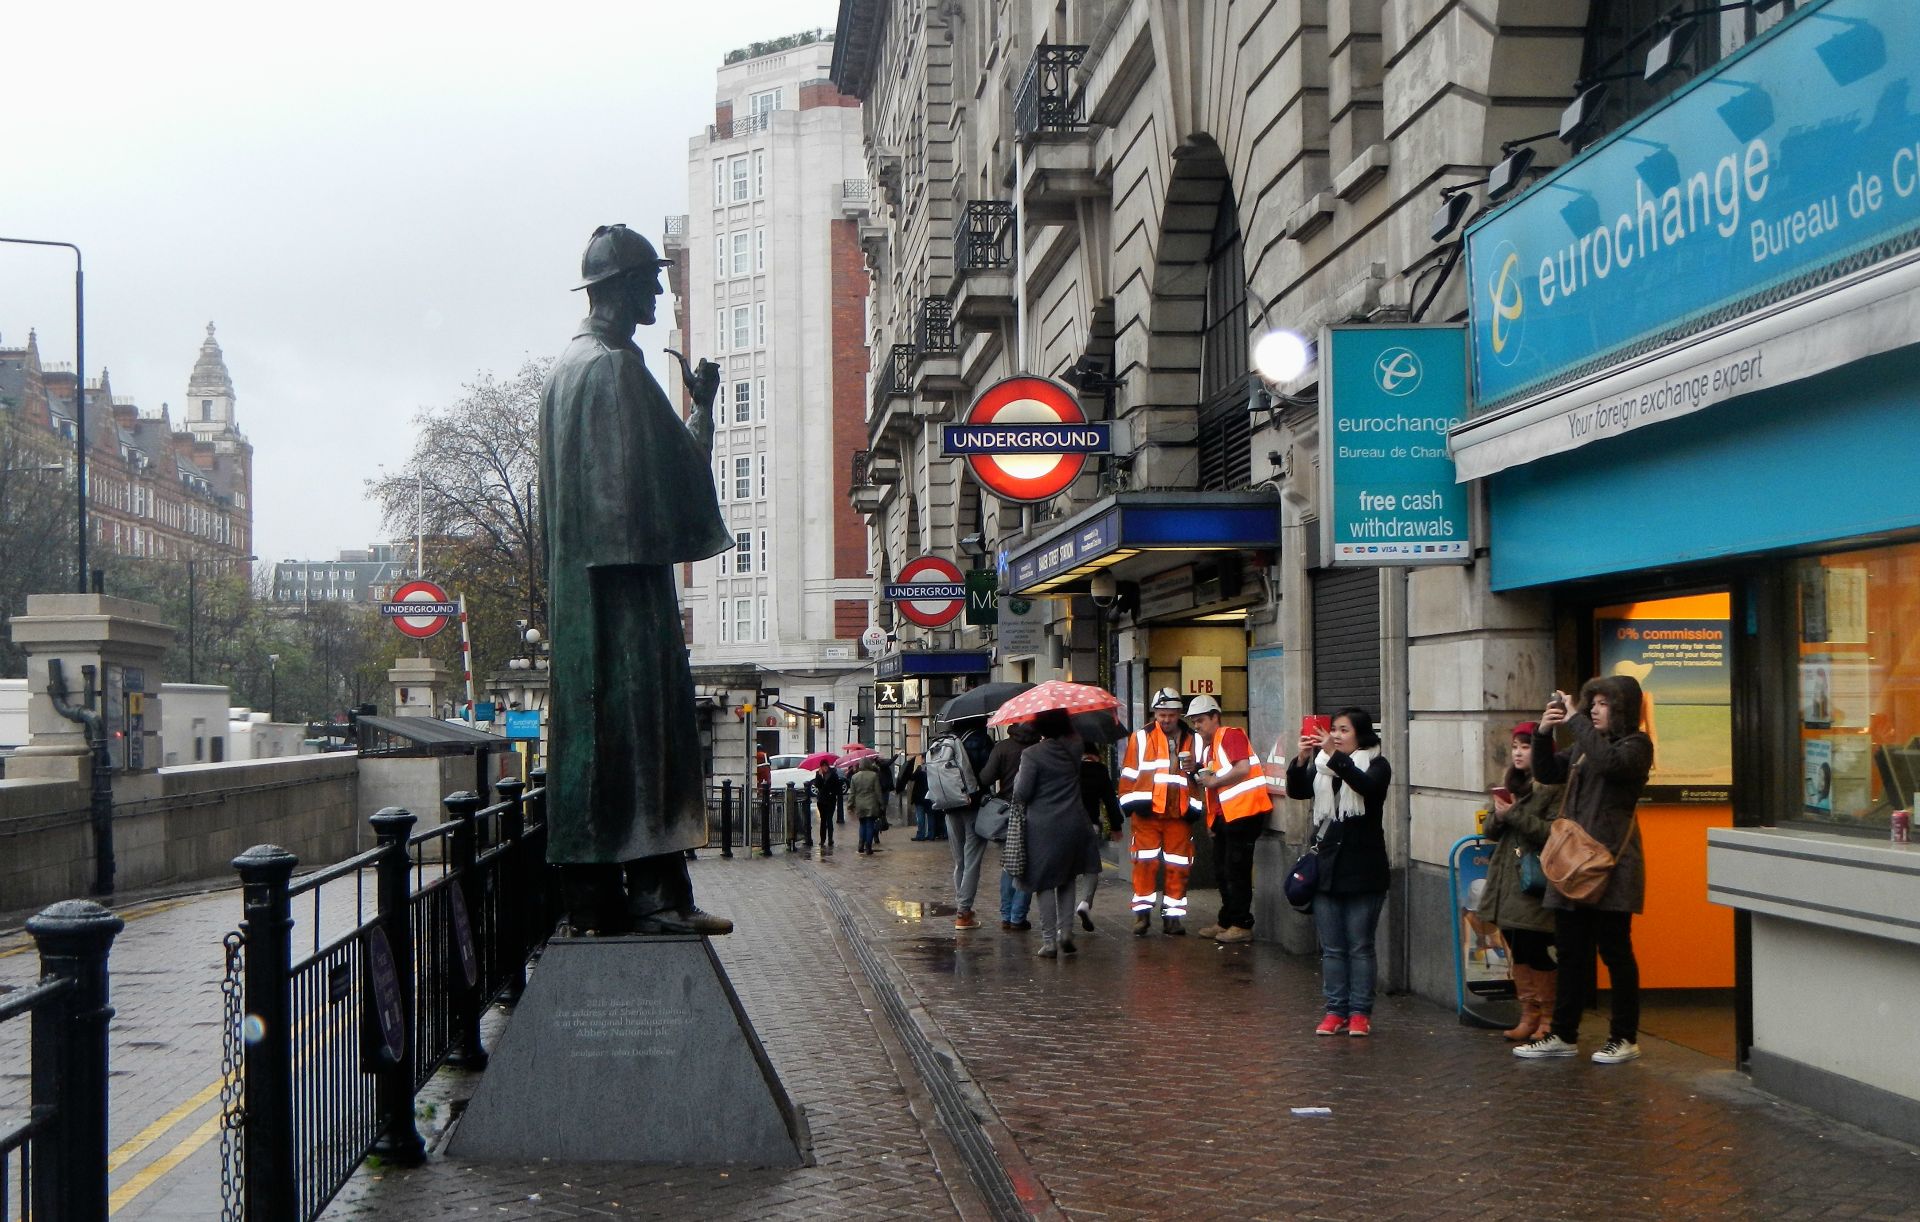 Bekannt geworden ist die Baker Street durch die 1886/1887 entstandene Romanfigur Sherlock Holmes.  Sherlock Holmes wohnt in den Erzählungen unter der fiktiven Adresse Baker Street 221b.